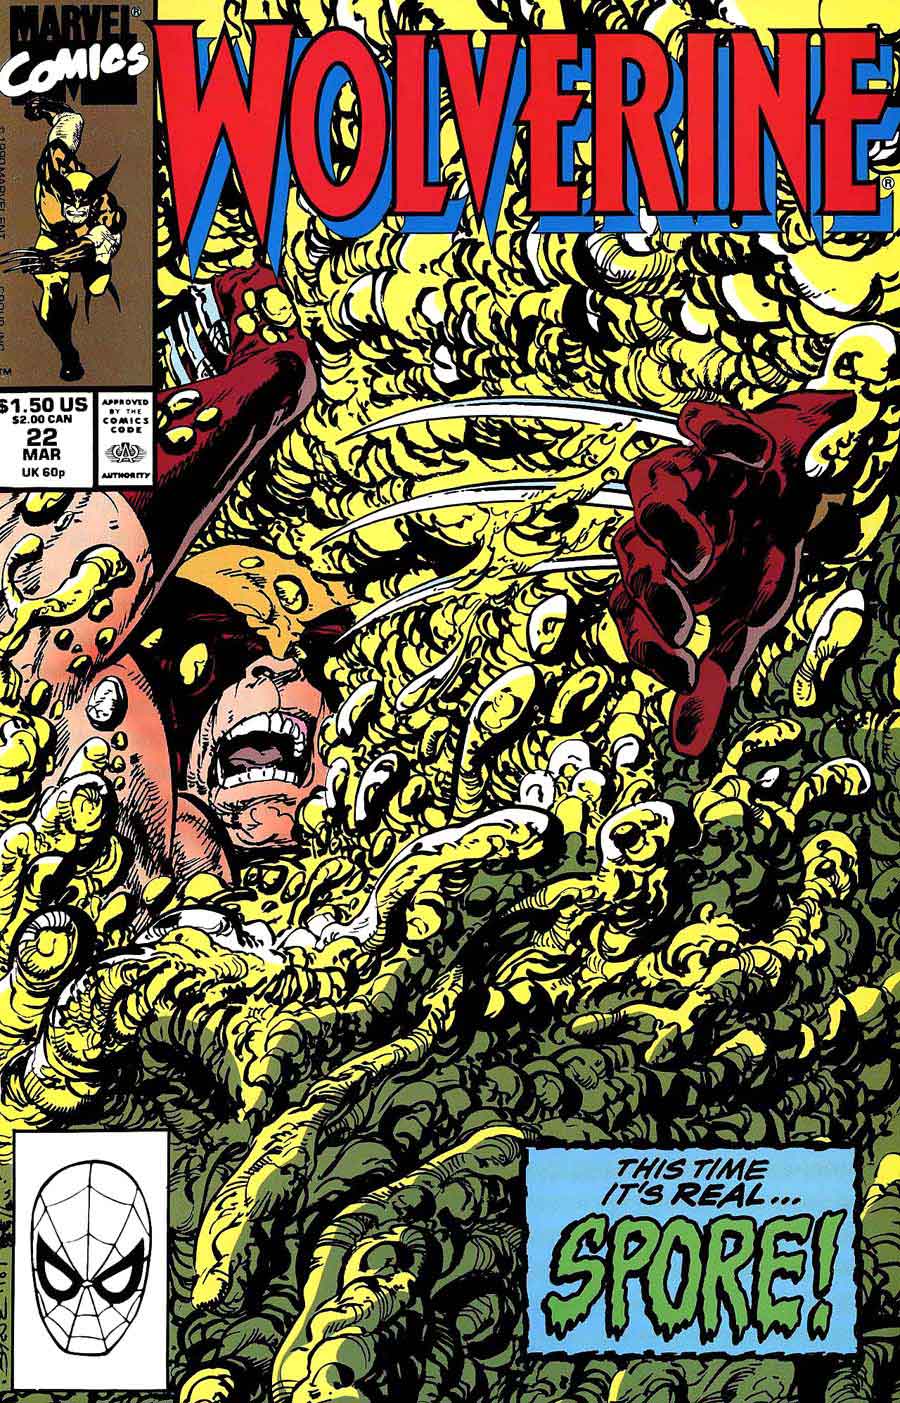 Wolverine v2 #22 - John Byrne art & cover